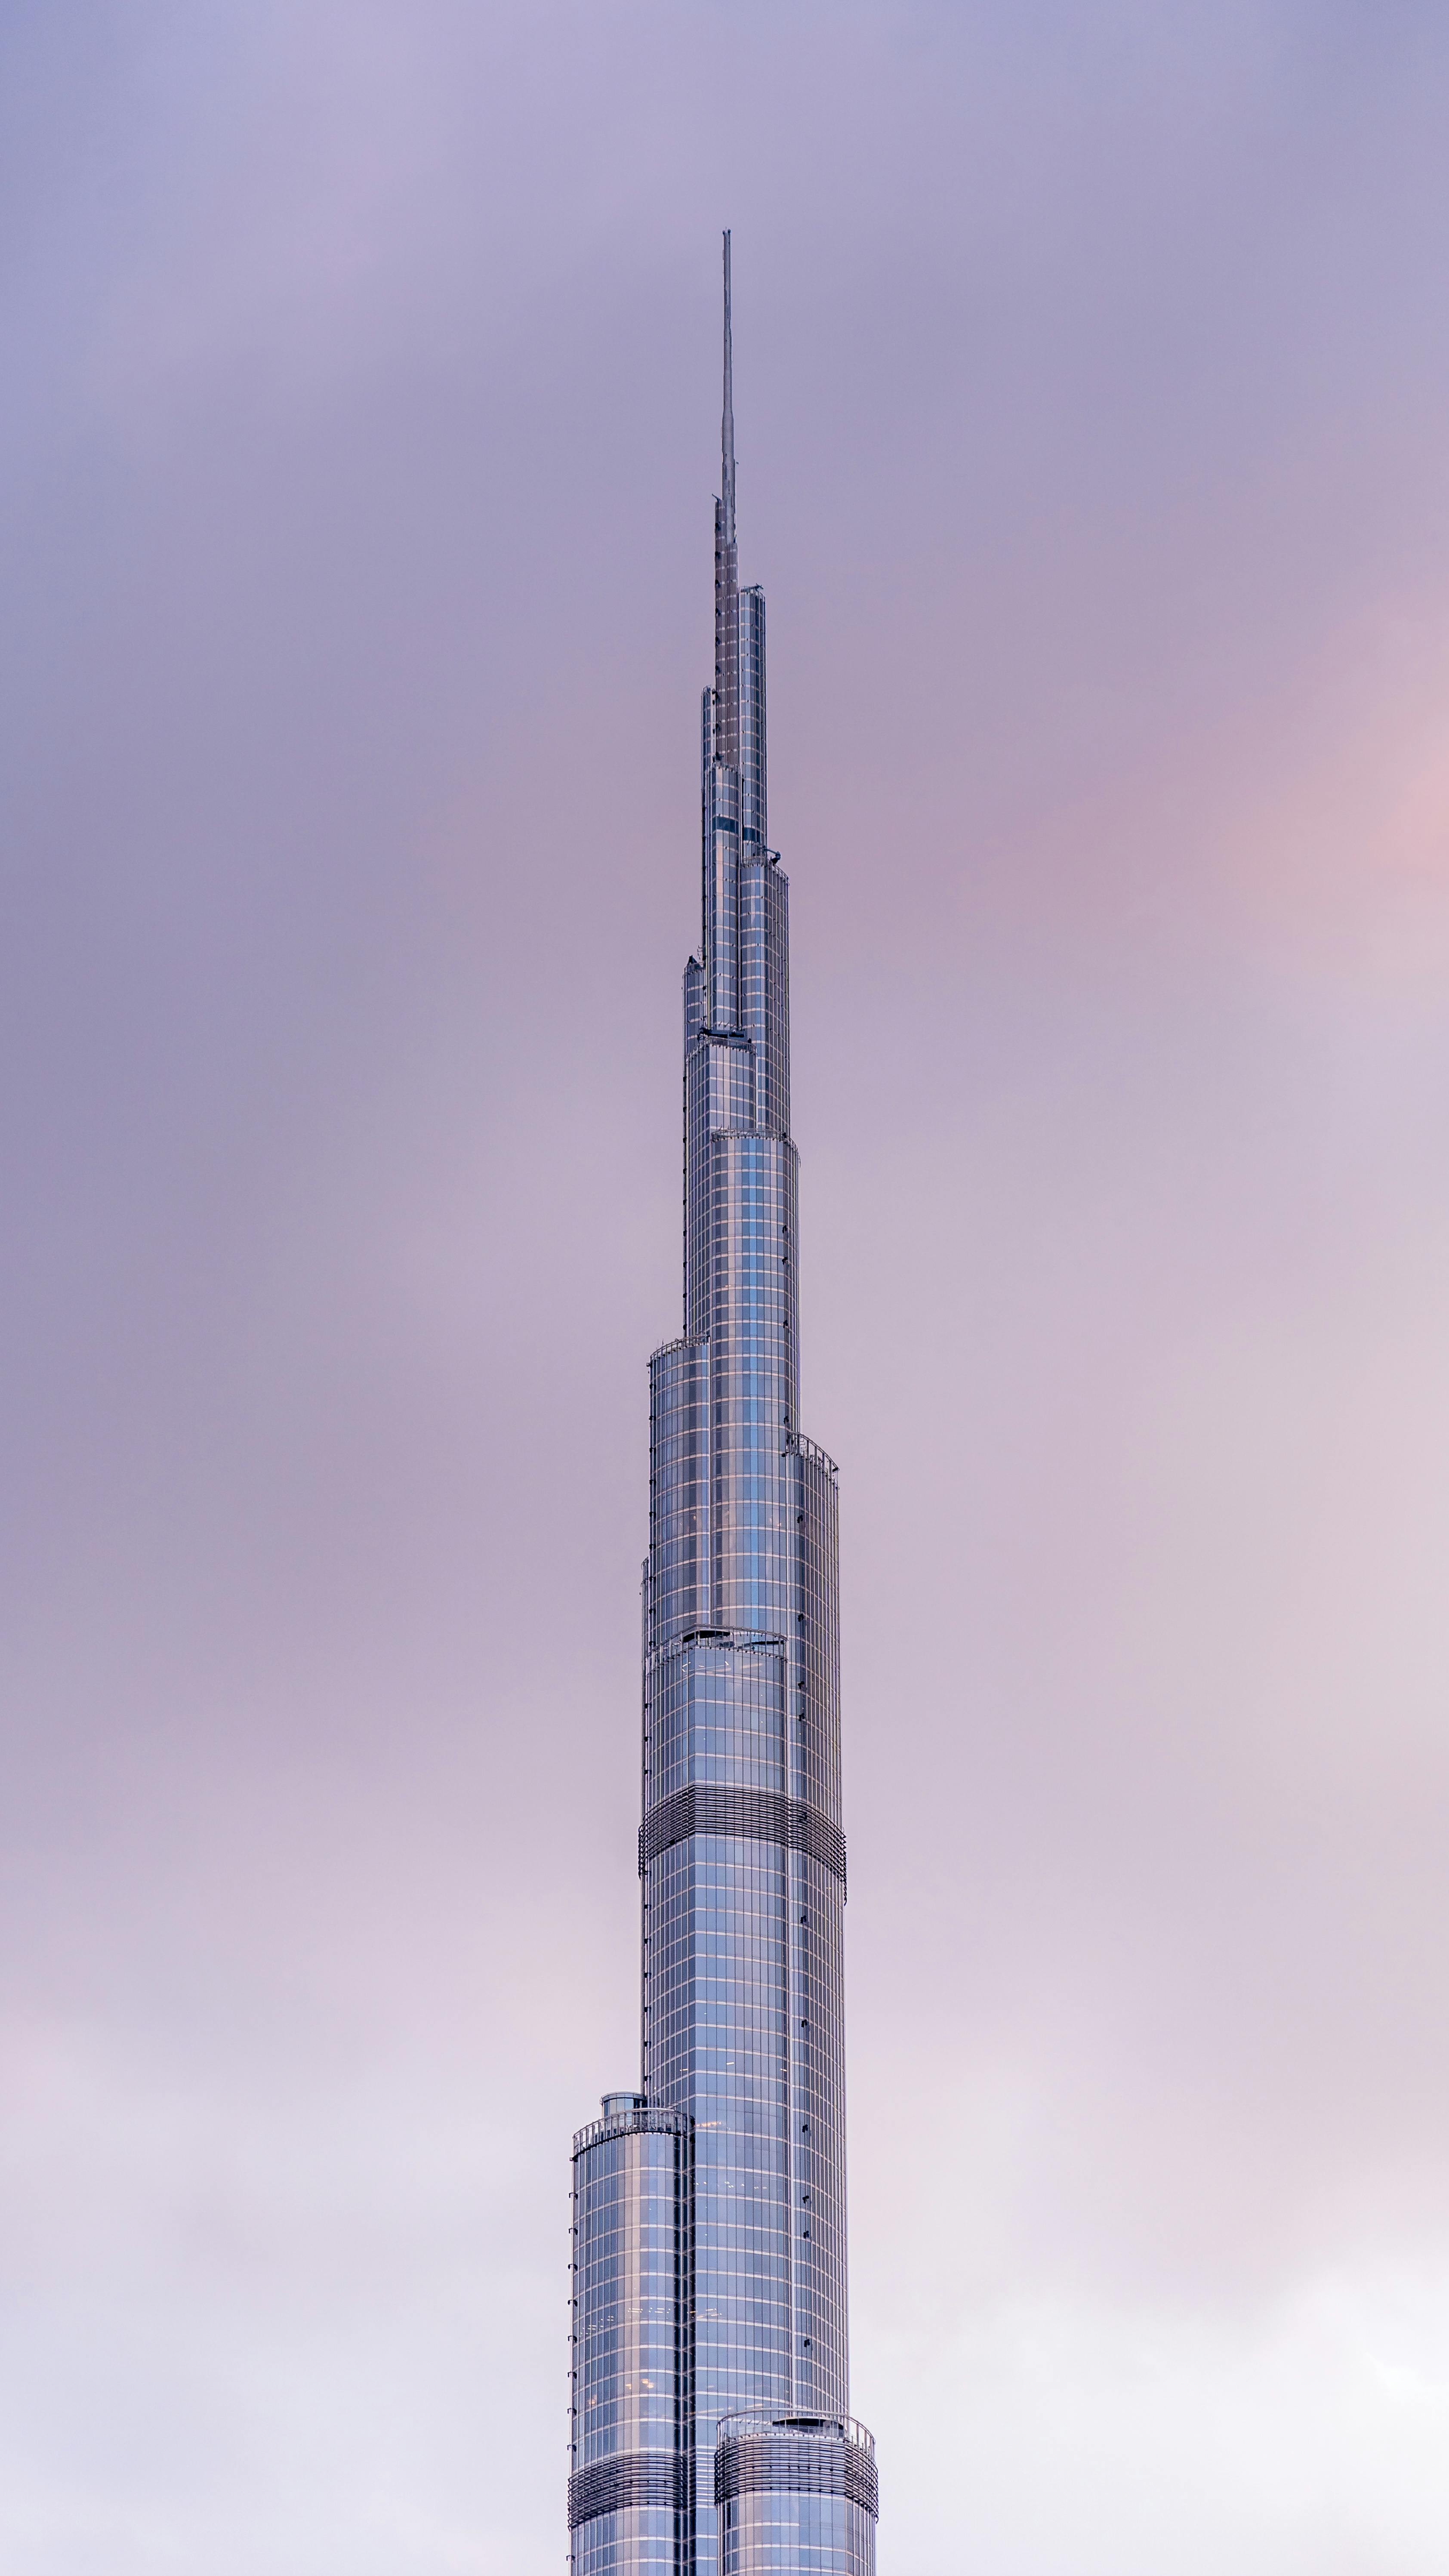 My Time in Dubai - Burj Khalifa